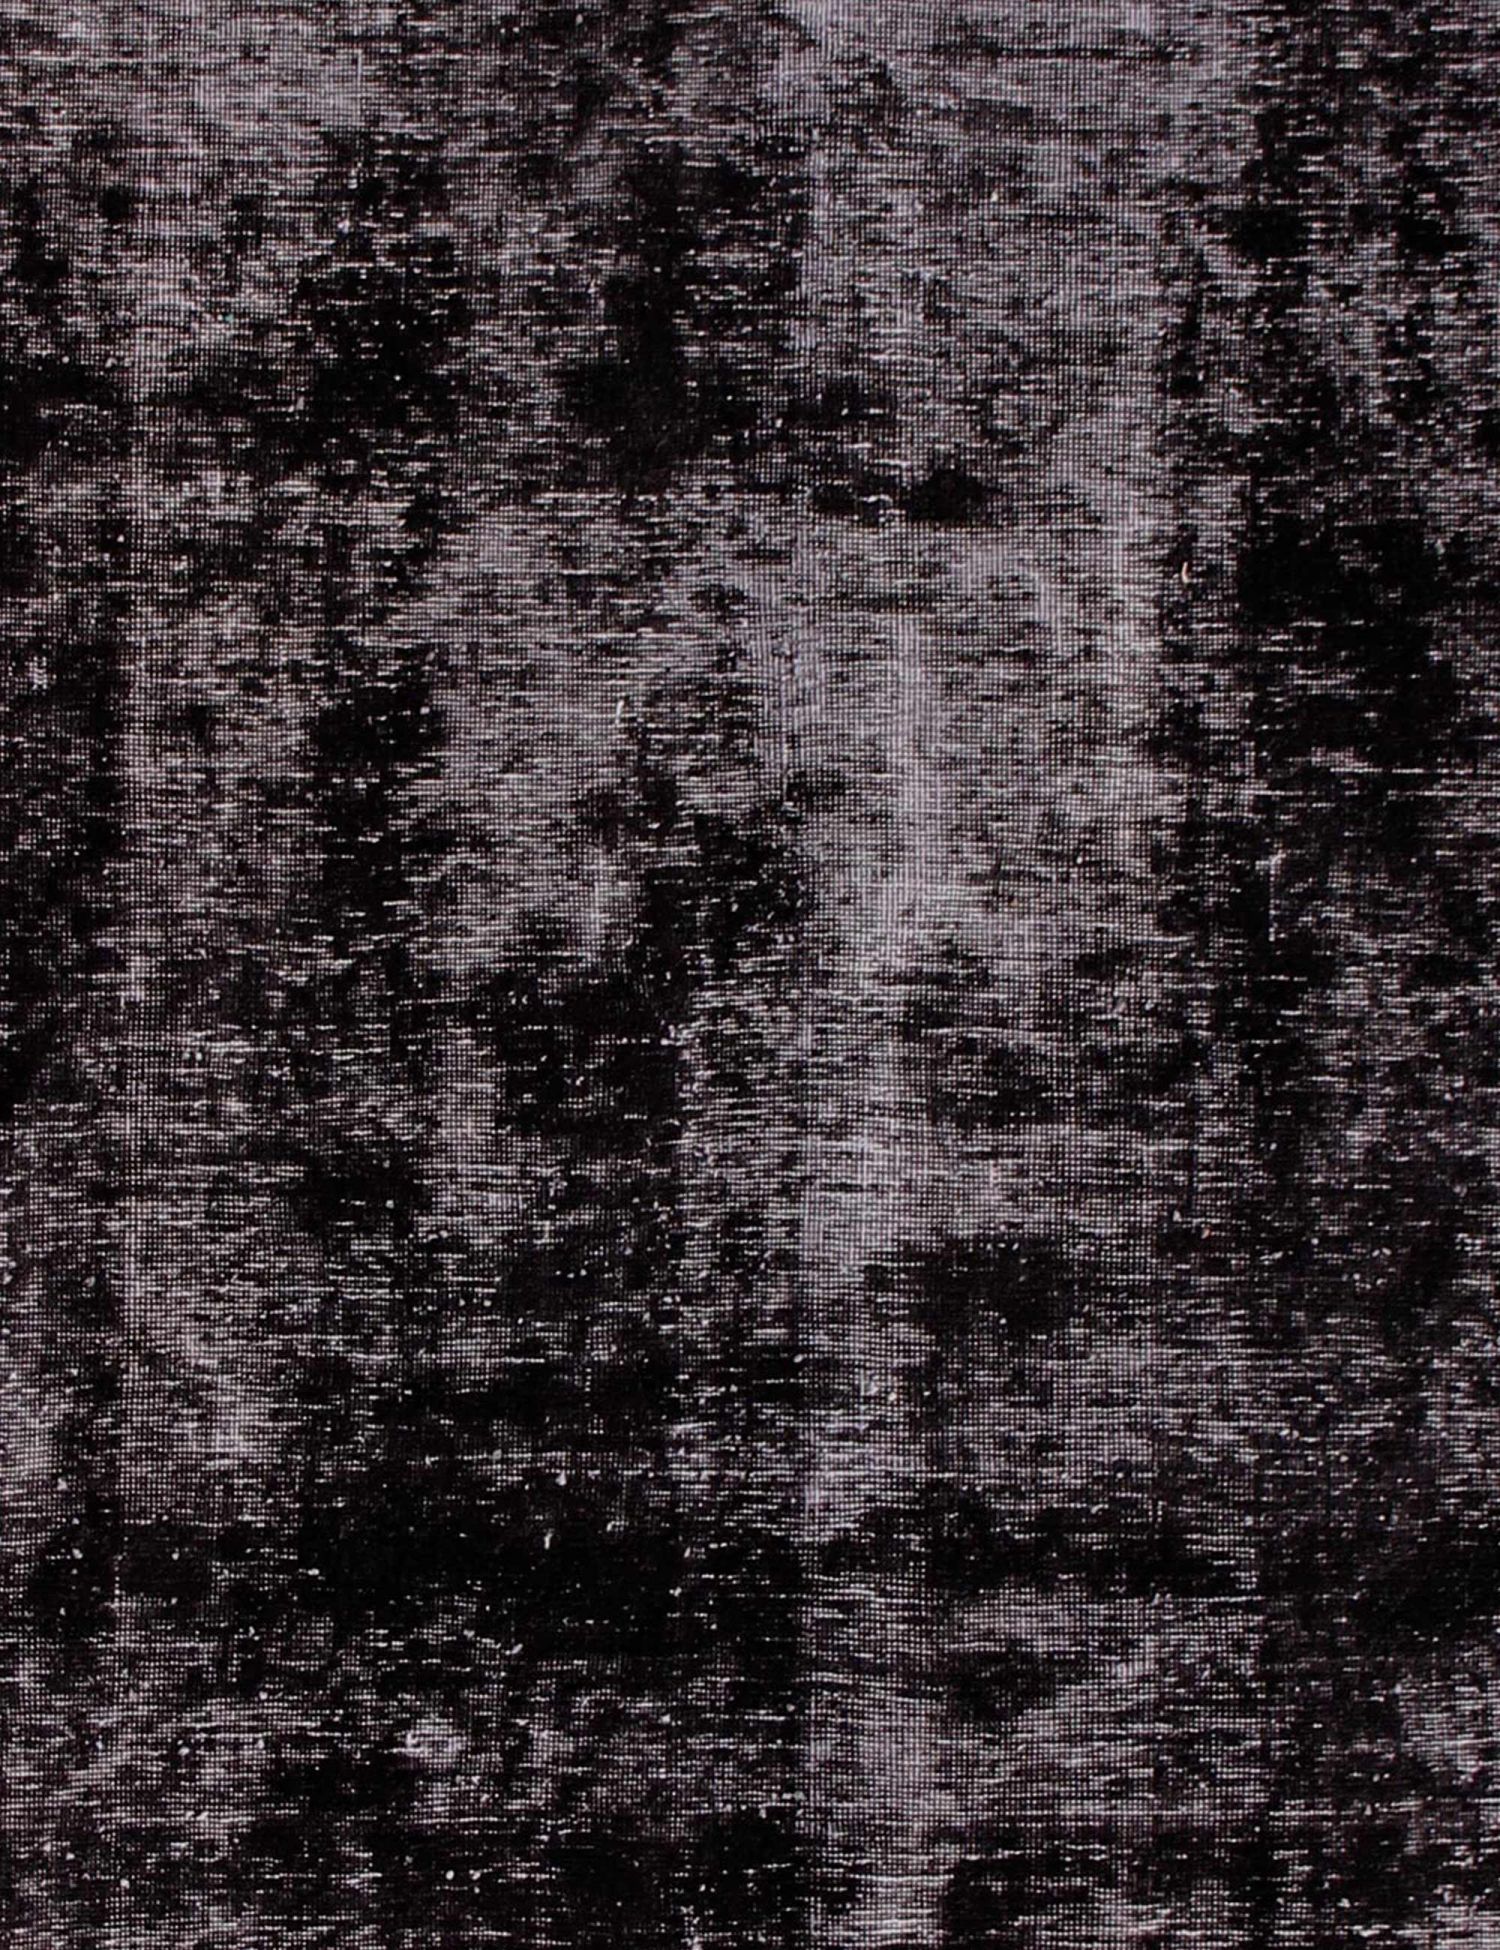 Persischer Vintage Teppich  schwarz <br/>210 x 210 cm